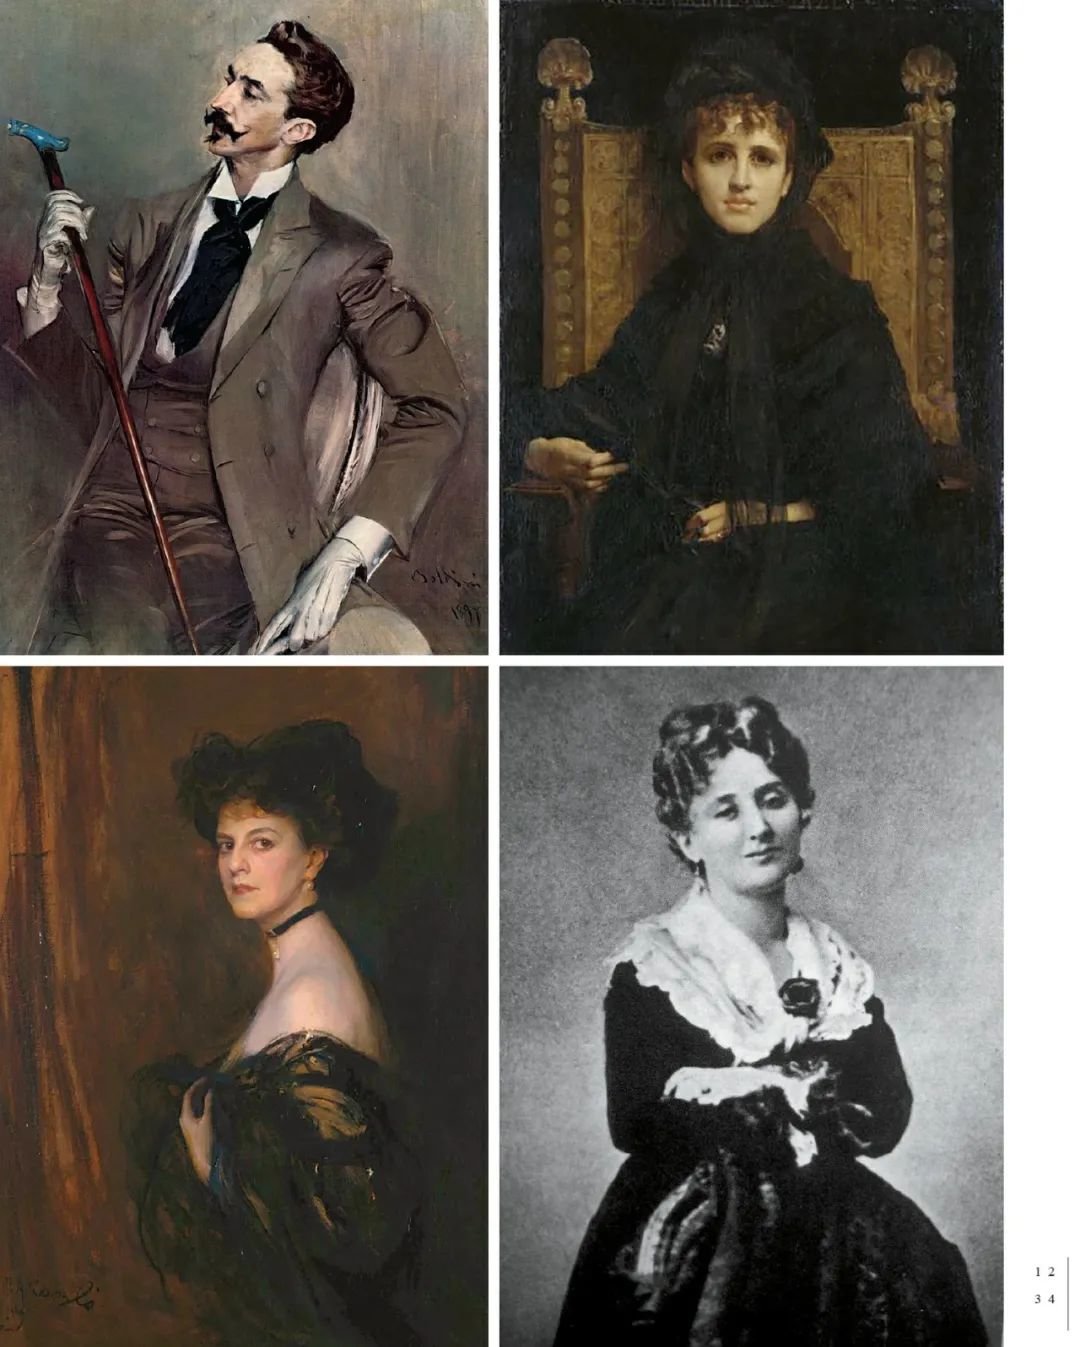 1 夏吕斯男爵的原型孟德斯鸠伯爵、2 奥黛特的部分灵感来源于热纳维耶芙·阿莱维、3 盖尔芒特亲王夫人原型葛夫乐伯爵夫人、4 维尔迪兰夫人原型亚蒙卡亚维夫人